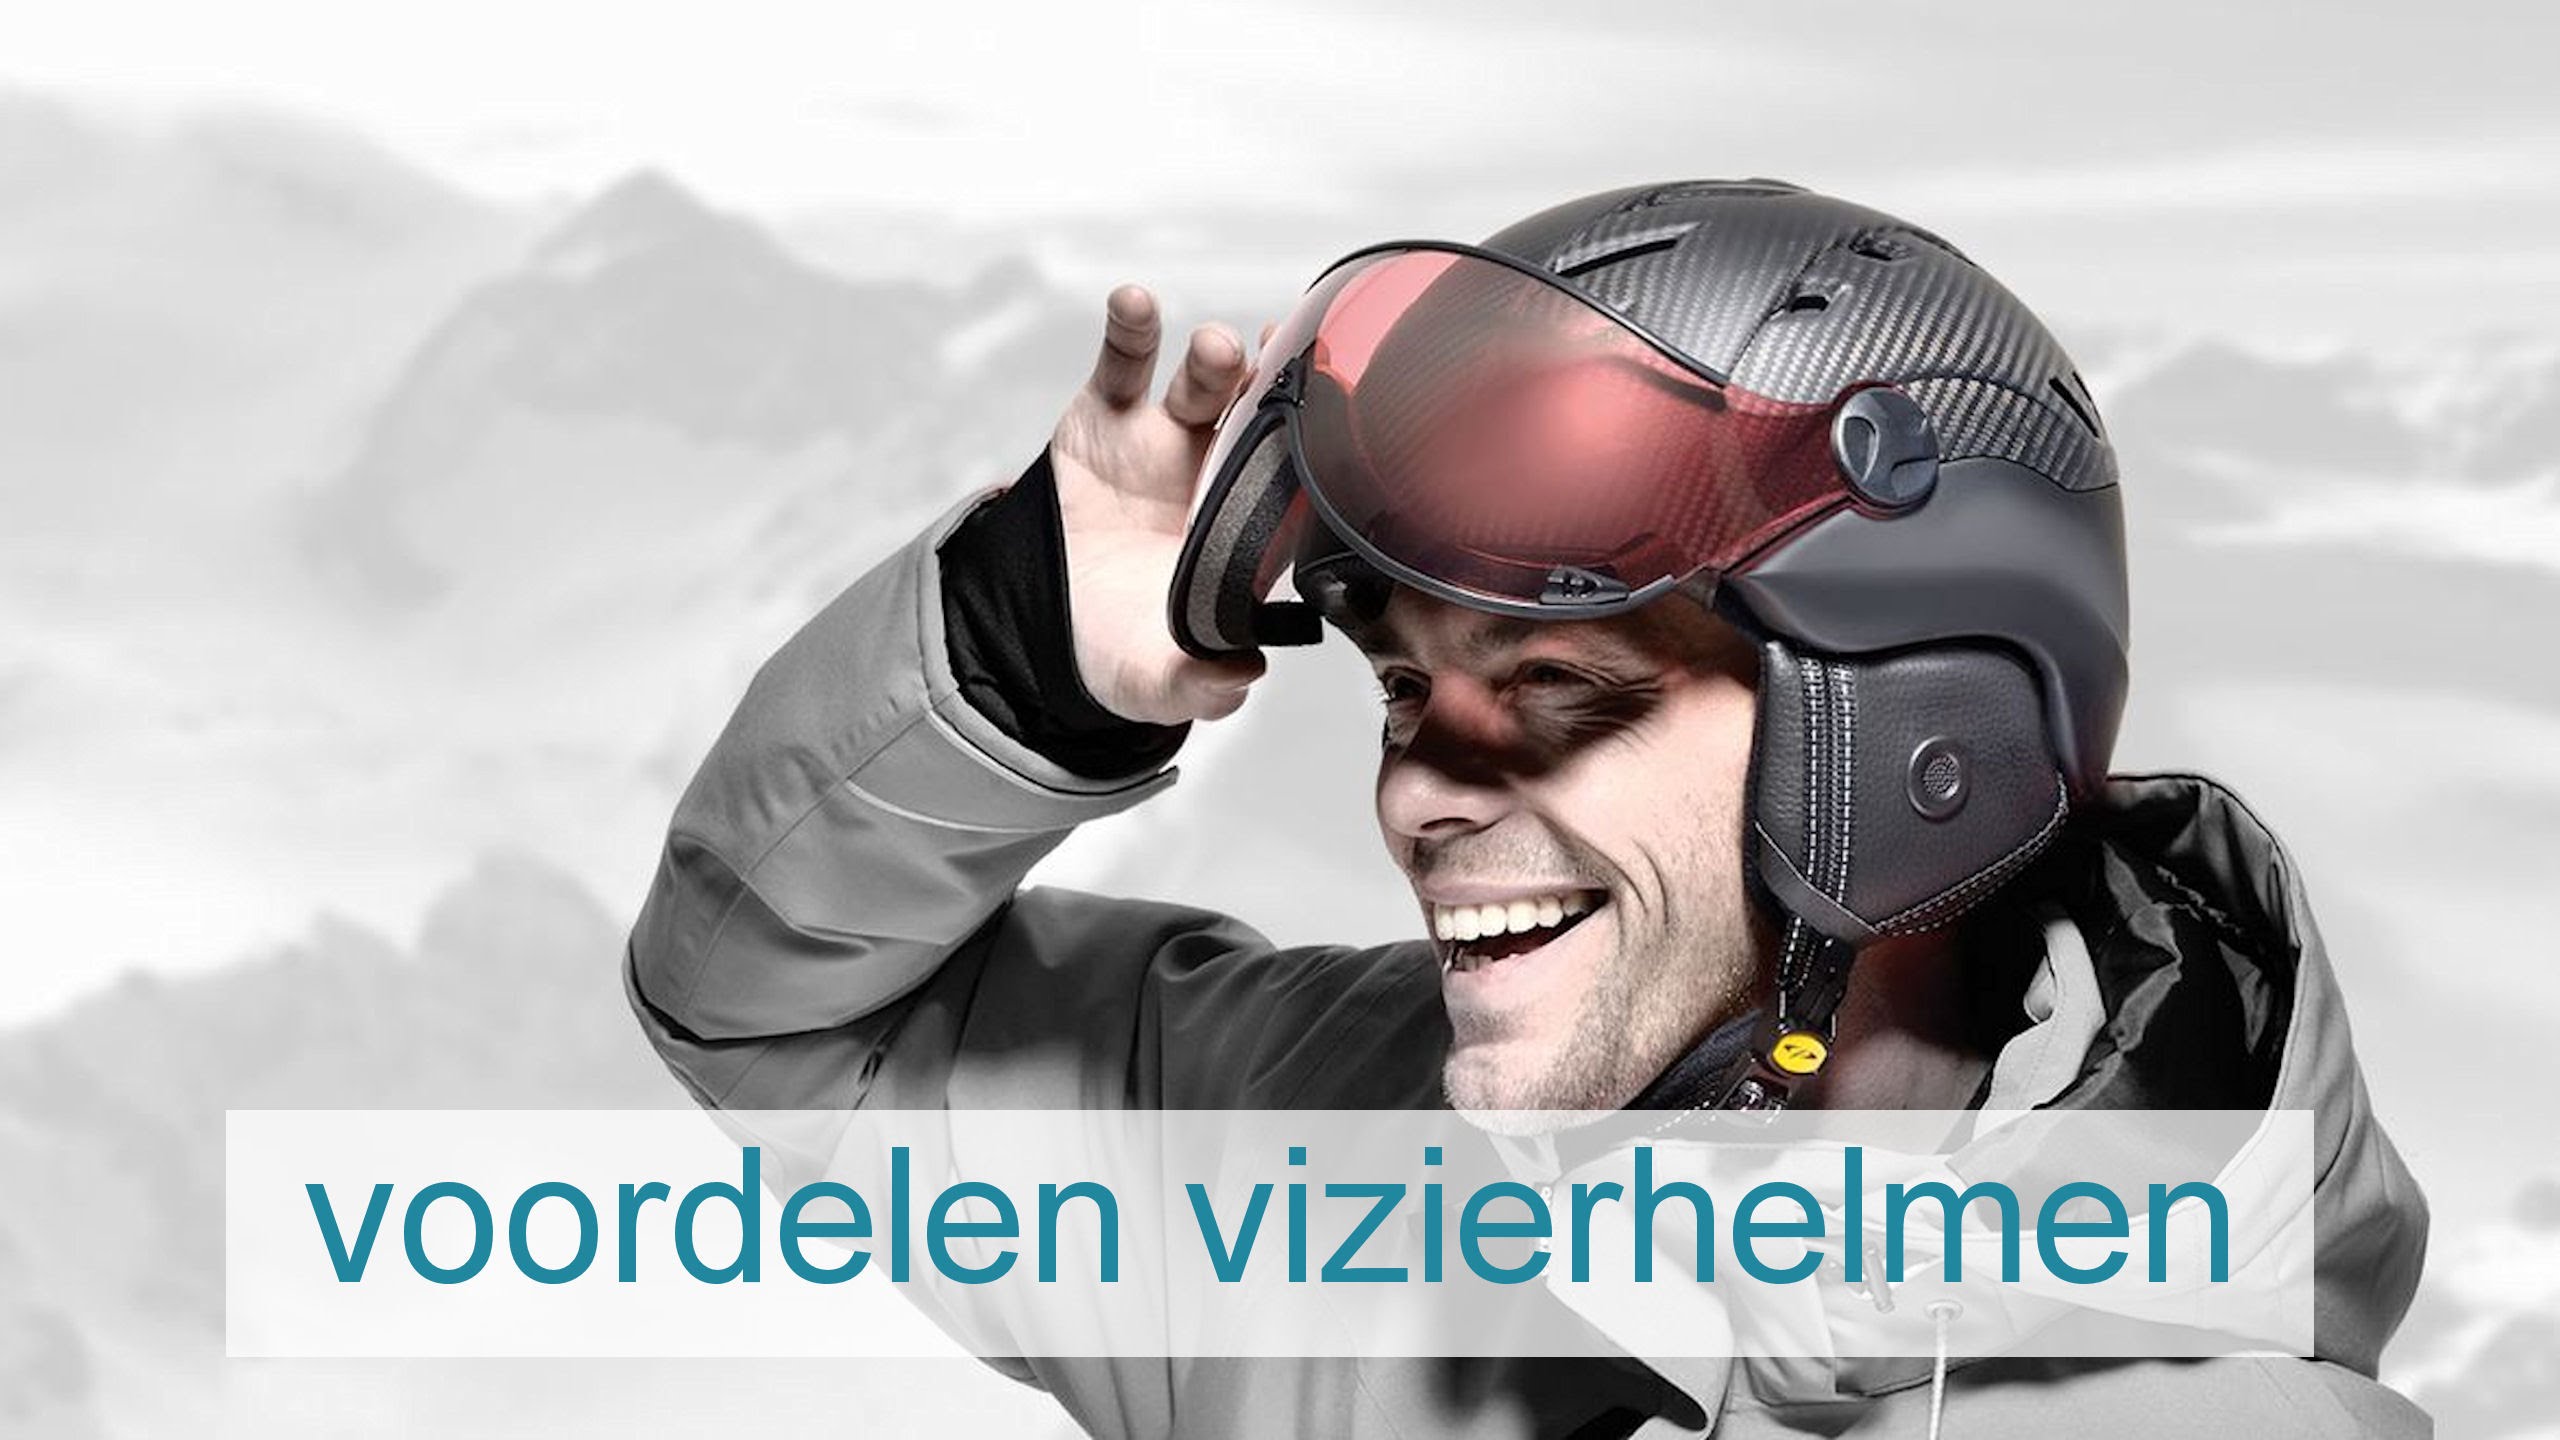 skihelm met vizier 2023 7 voordelen voor vizier helm modellen!